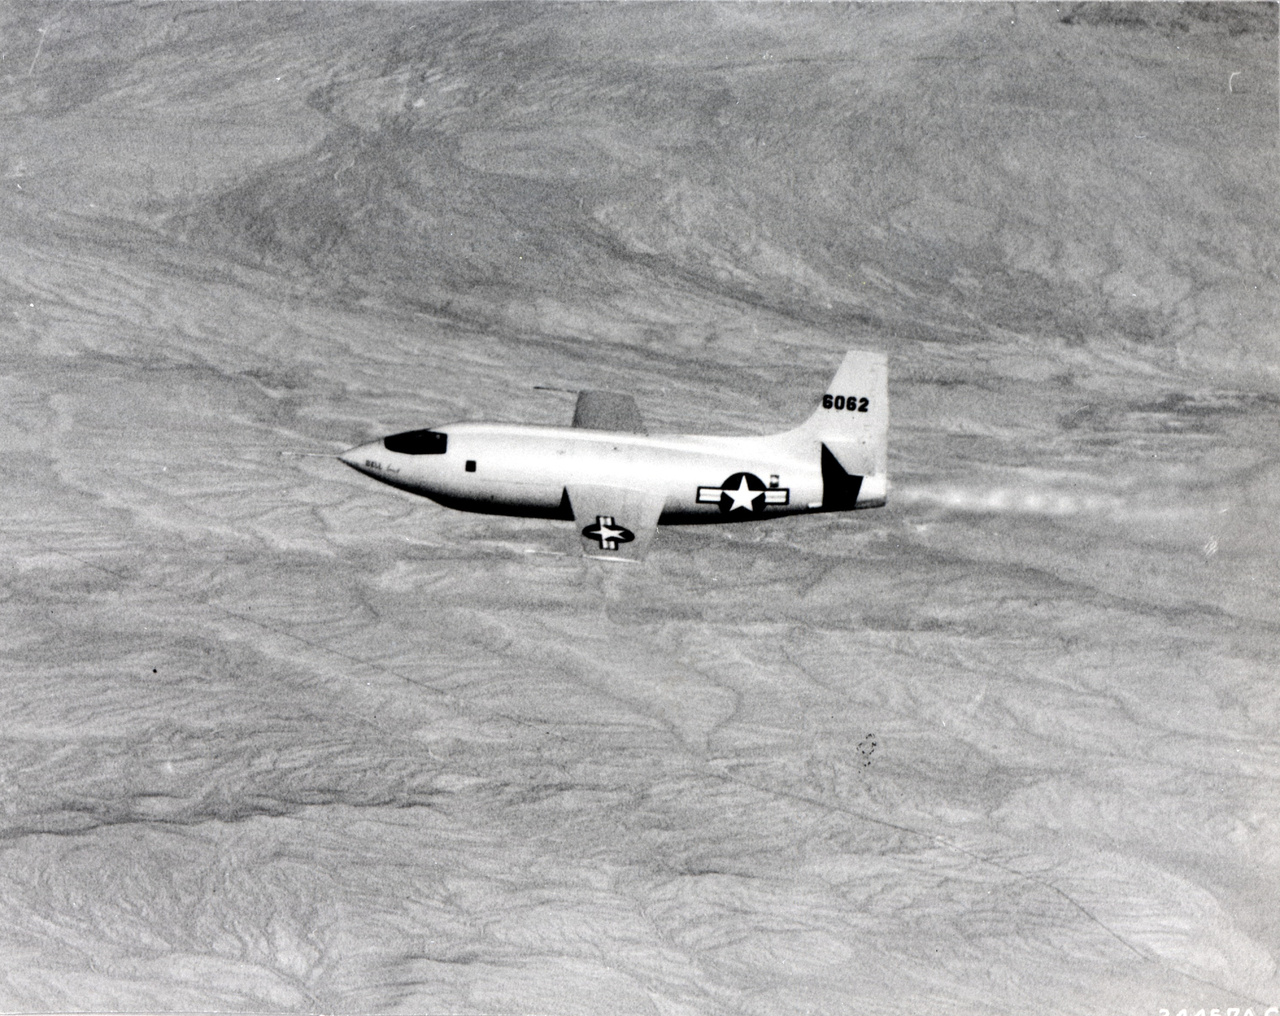 A rakétahajtás okozta rendkívüli terhelésekre készülve az X-1 építői olyan géptörzset alkottak, ami akár 18 g-s terhelést is kibírt - ezzel a korszak legstrapabíróbb repülőgépét vezethette Yeager.